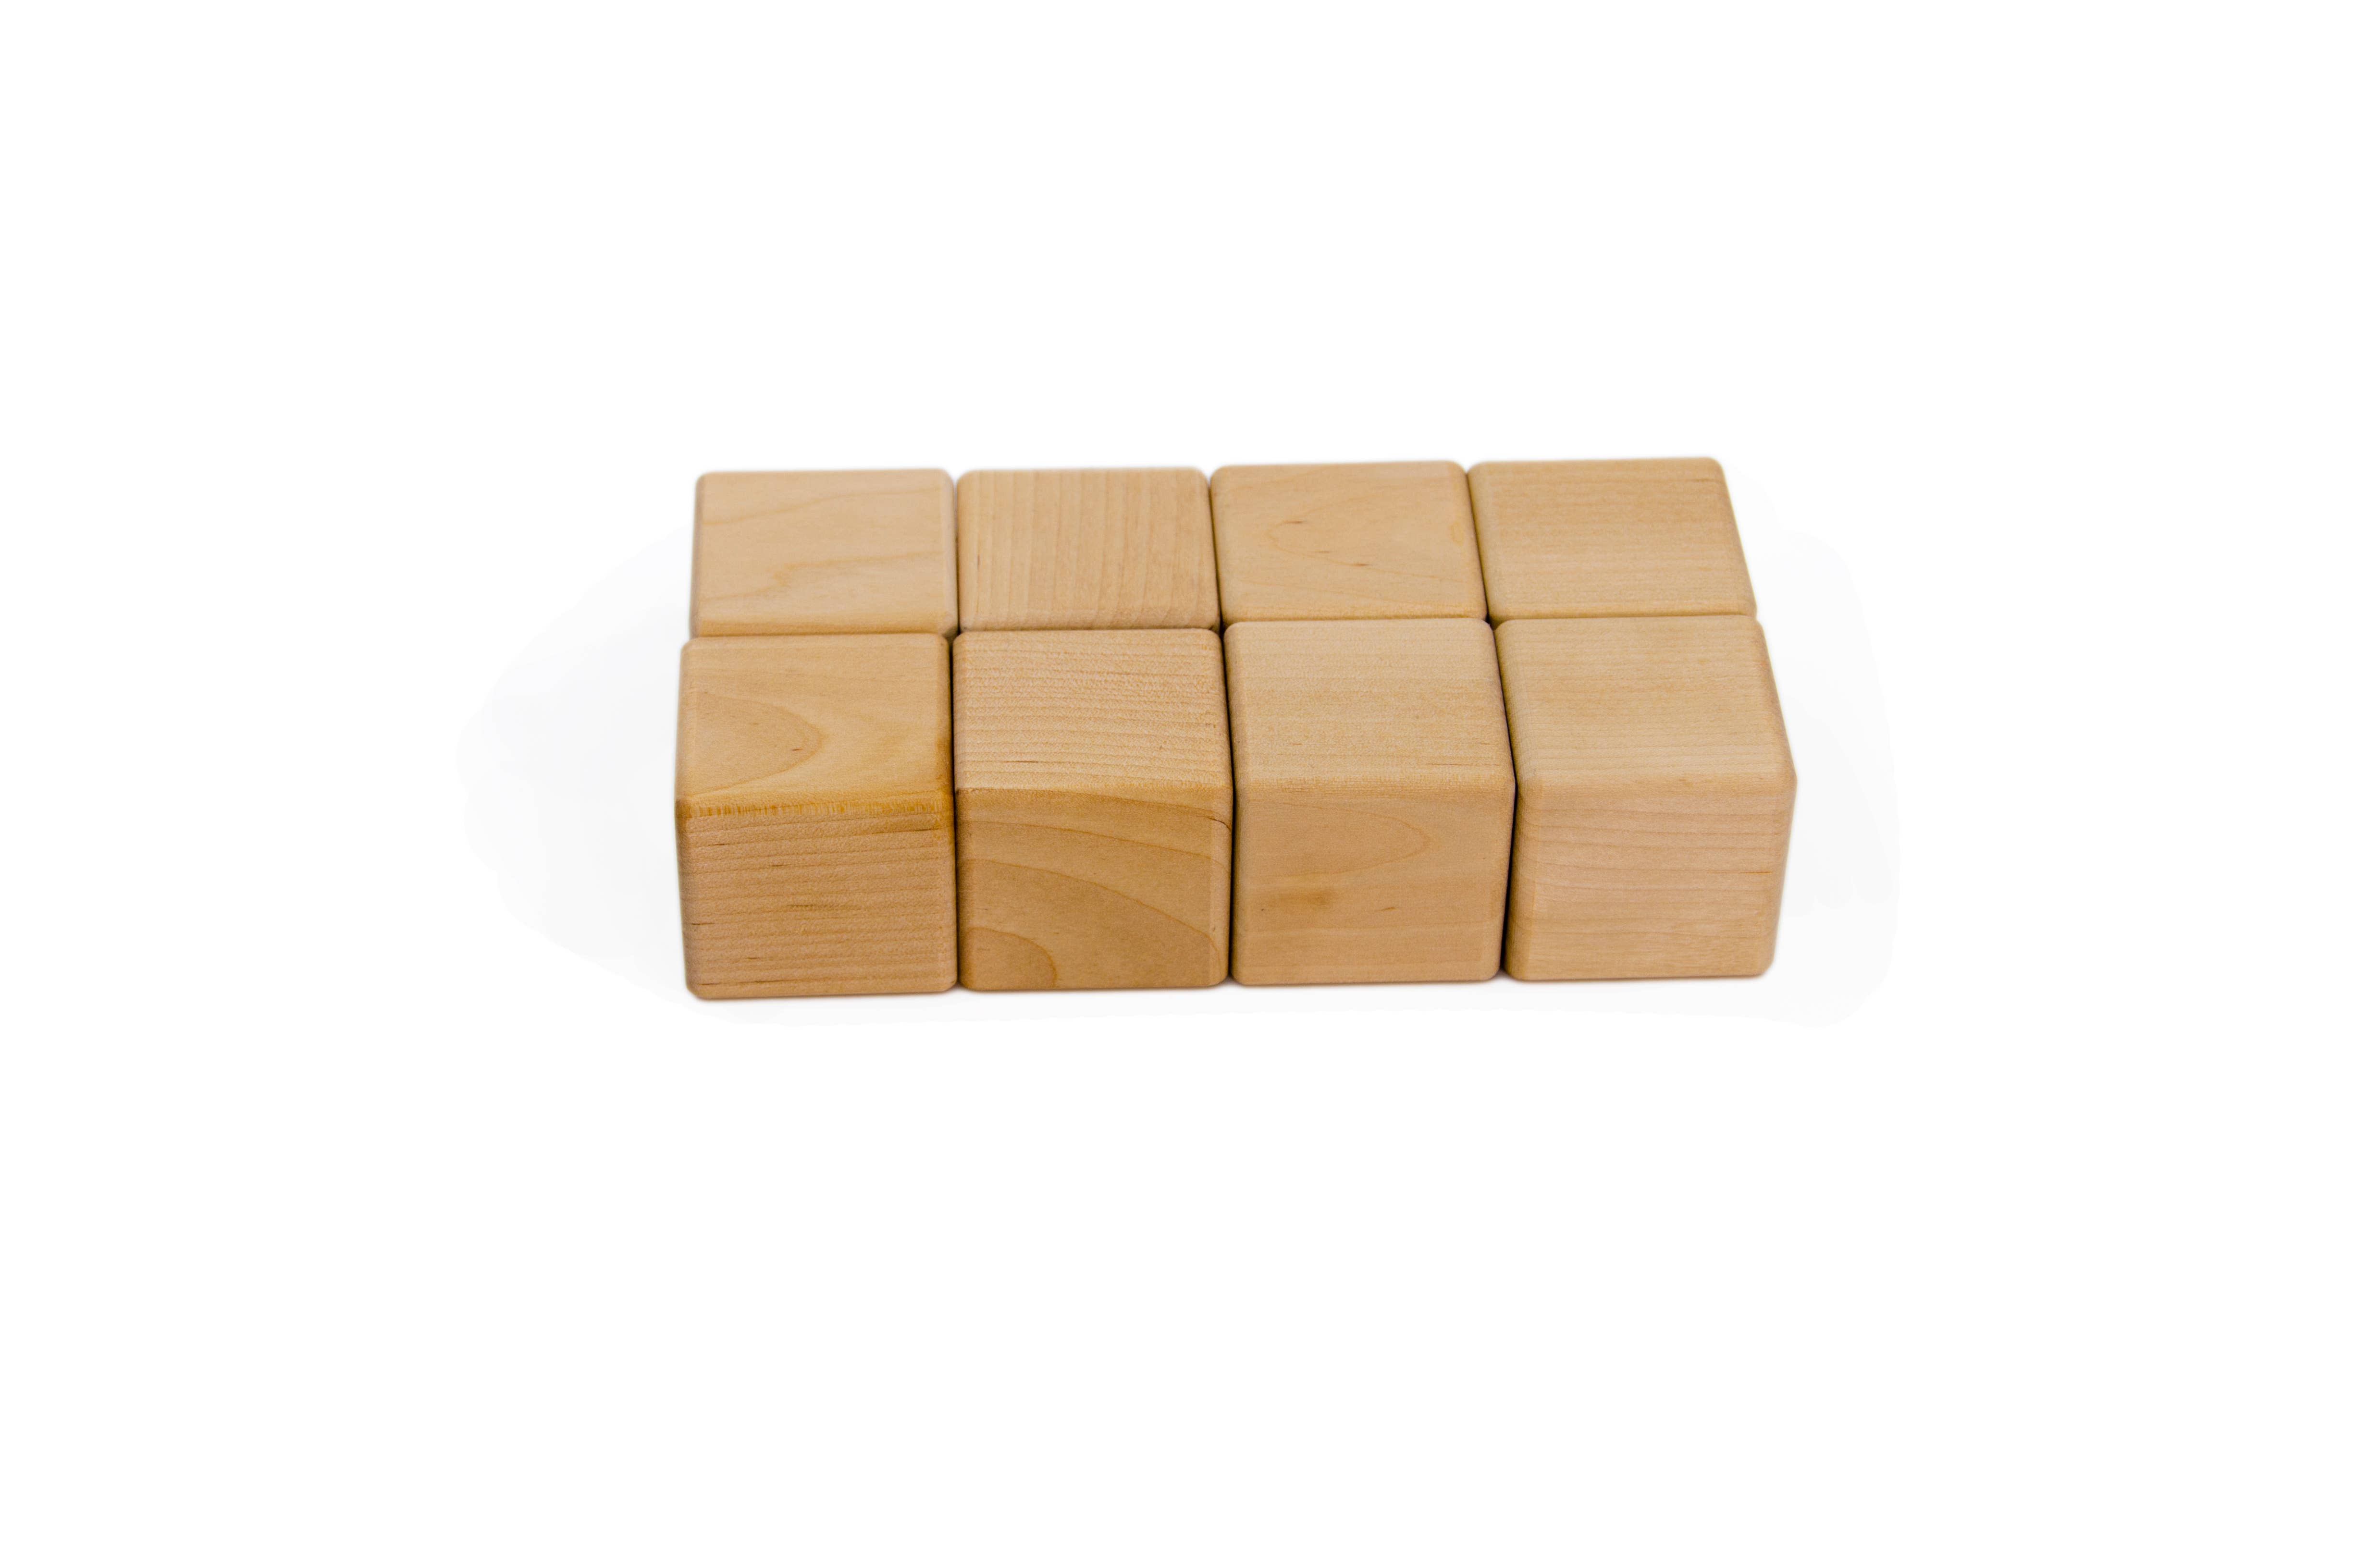 Carré en bois rond cube disques Craft blocs jouet créatif décoration briques eco